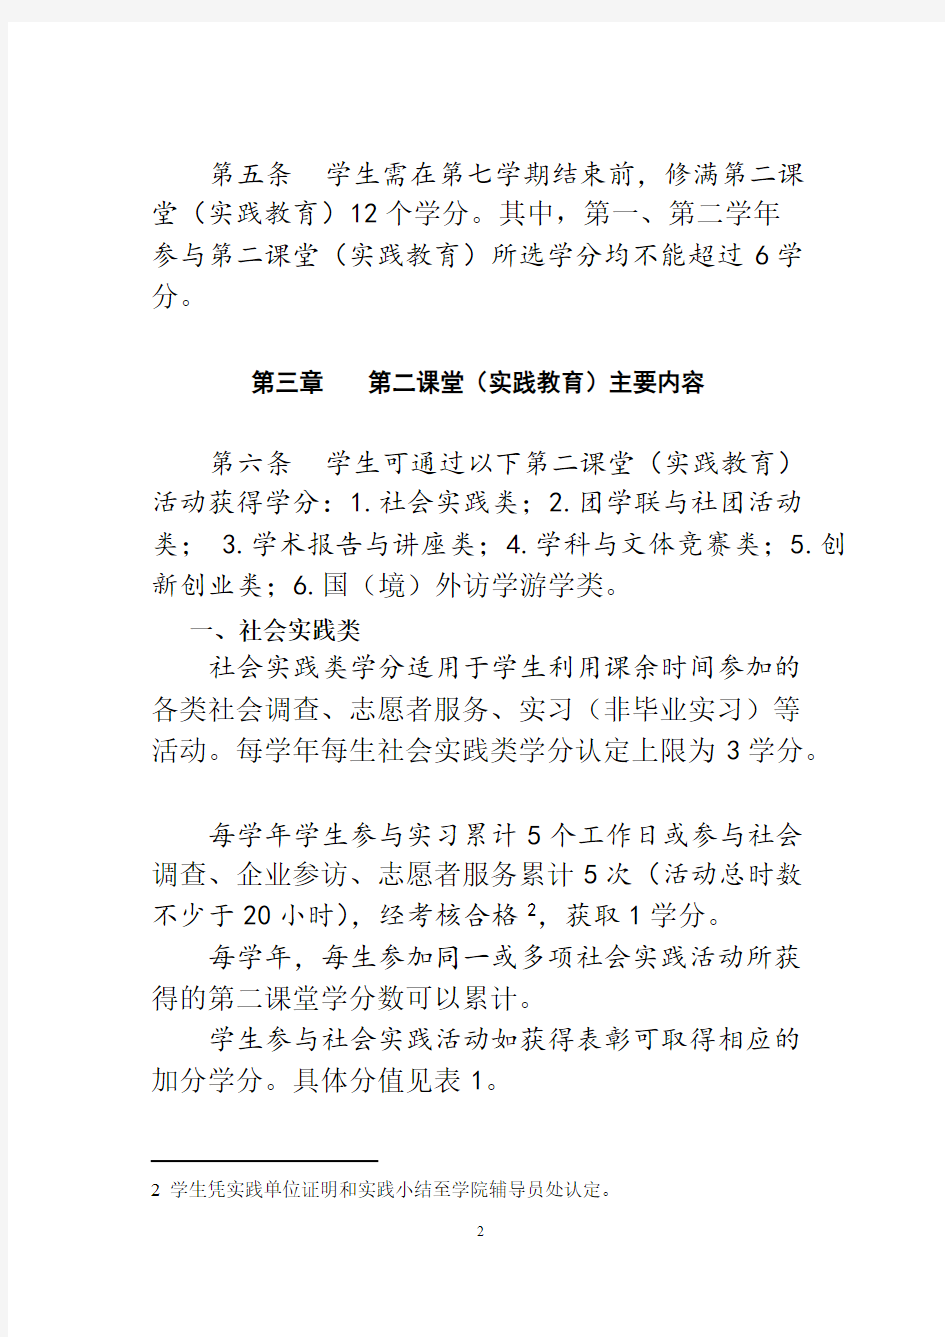 上海财经大学本科生第二课堂实践教育学分认定及实施办法